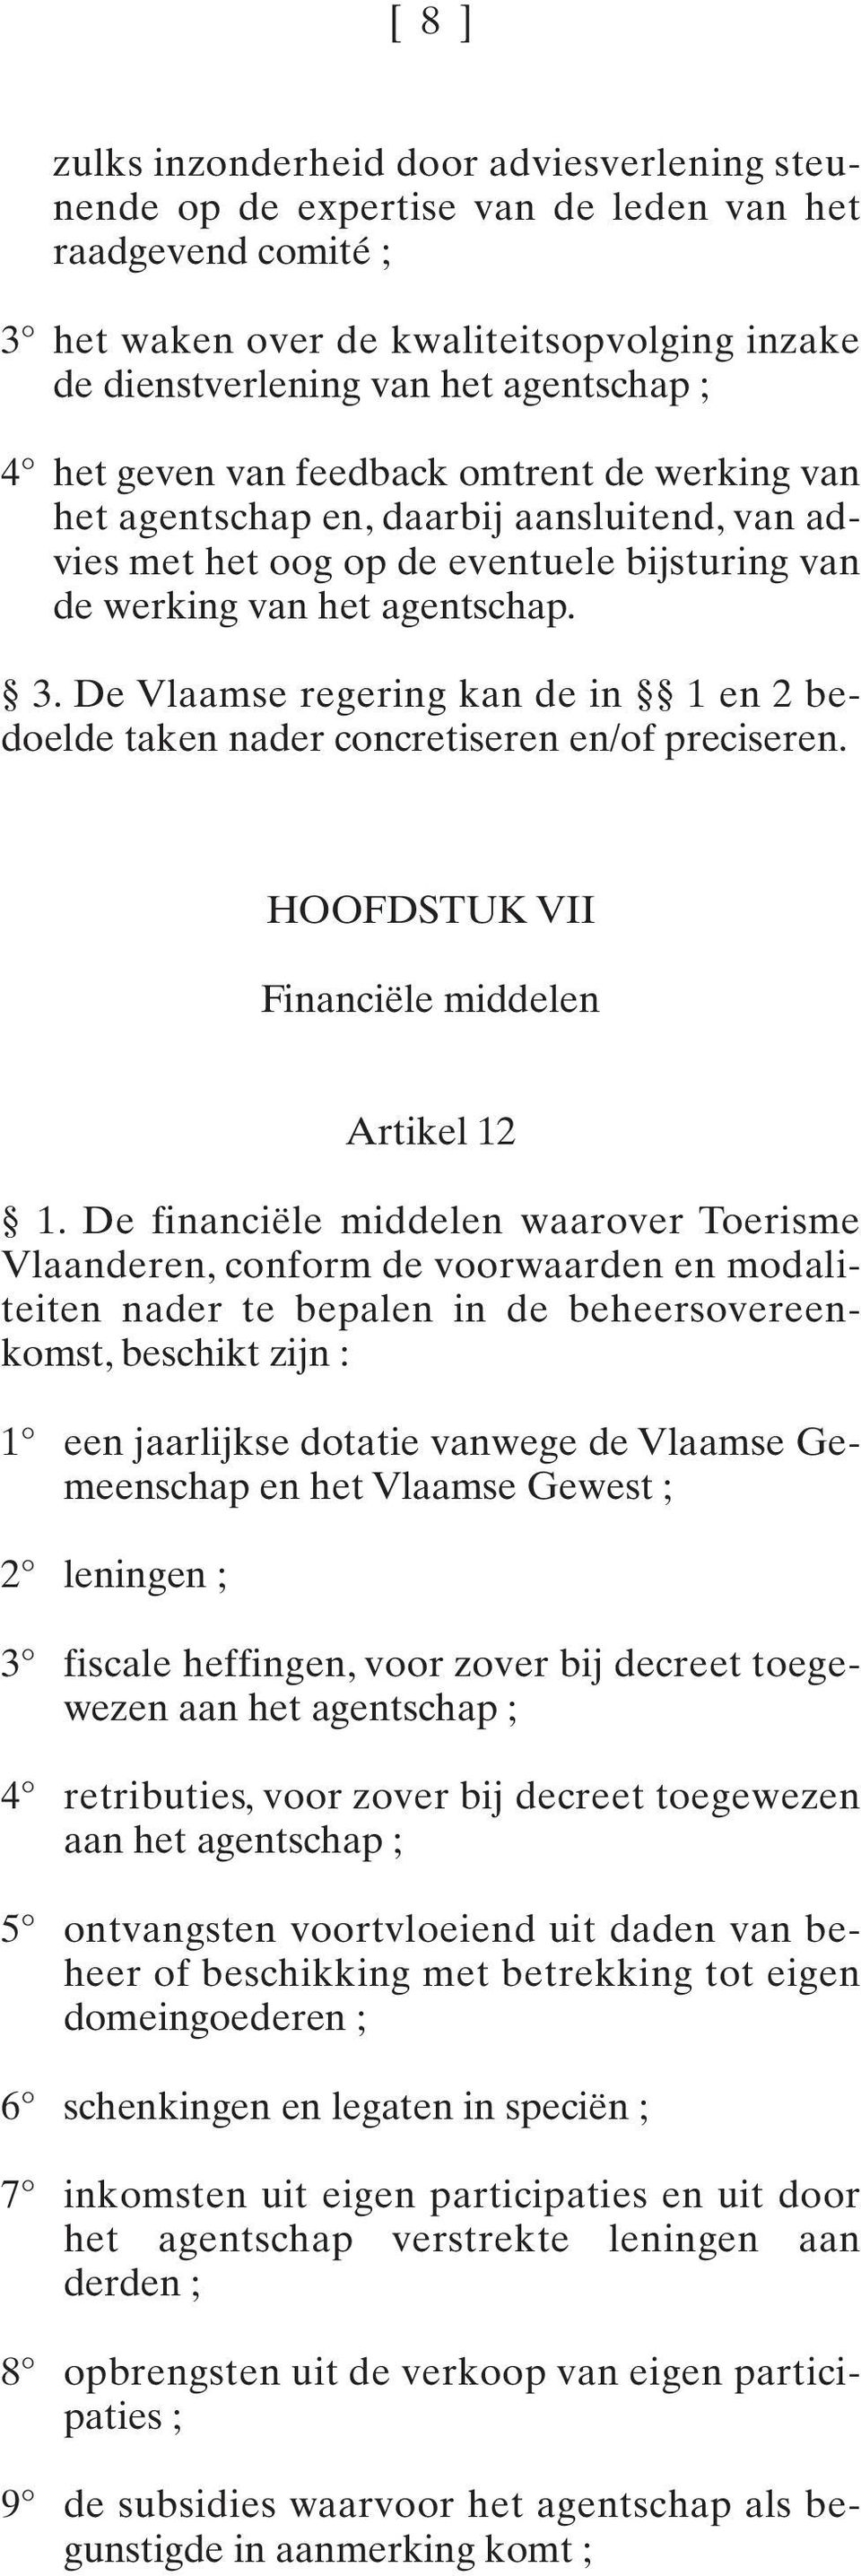 De Vlaamse regering kan de in 1 en 2 bedoelde taken nader concretiseren en/of preciseren. HOOFDSTUK VII Financiële middelen Artikel 12 1.